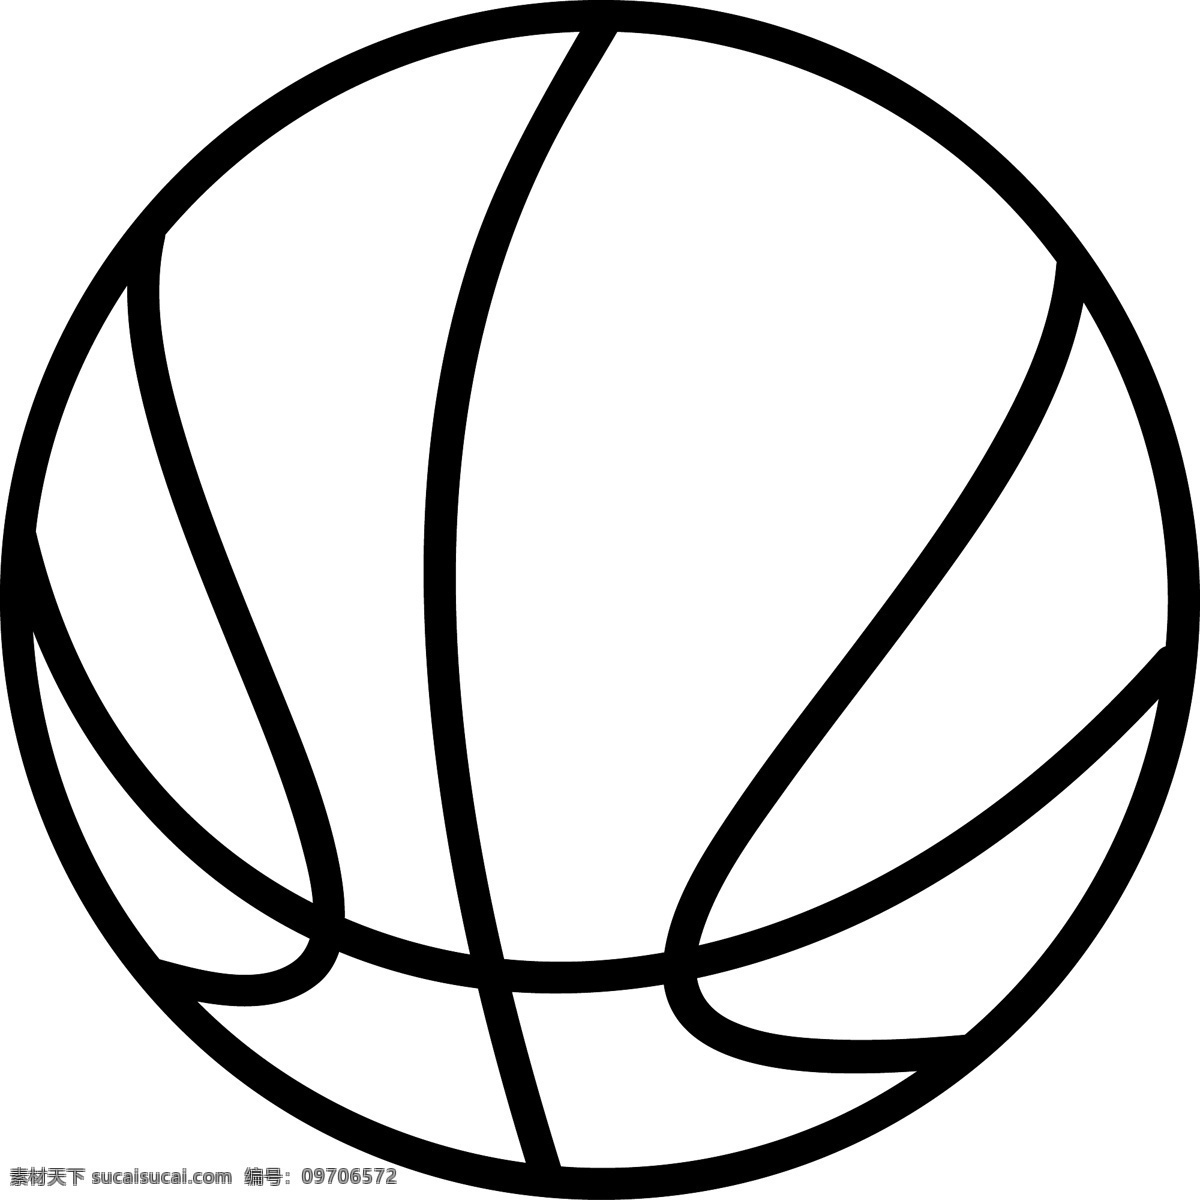 矢量 篮球 矢量篮球 矢量图 日常生活